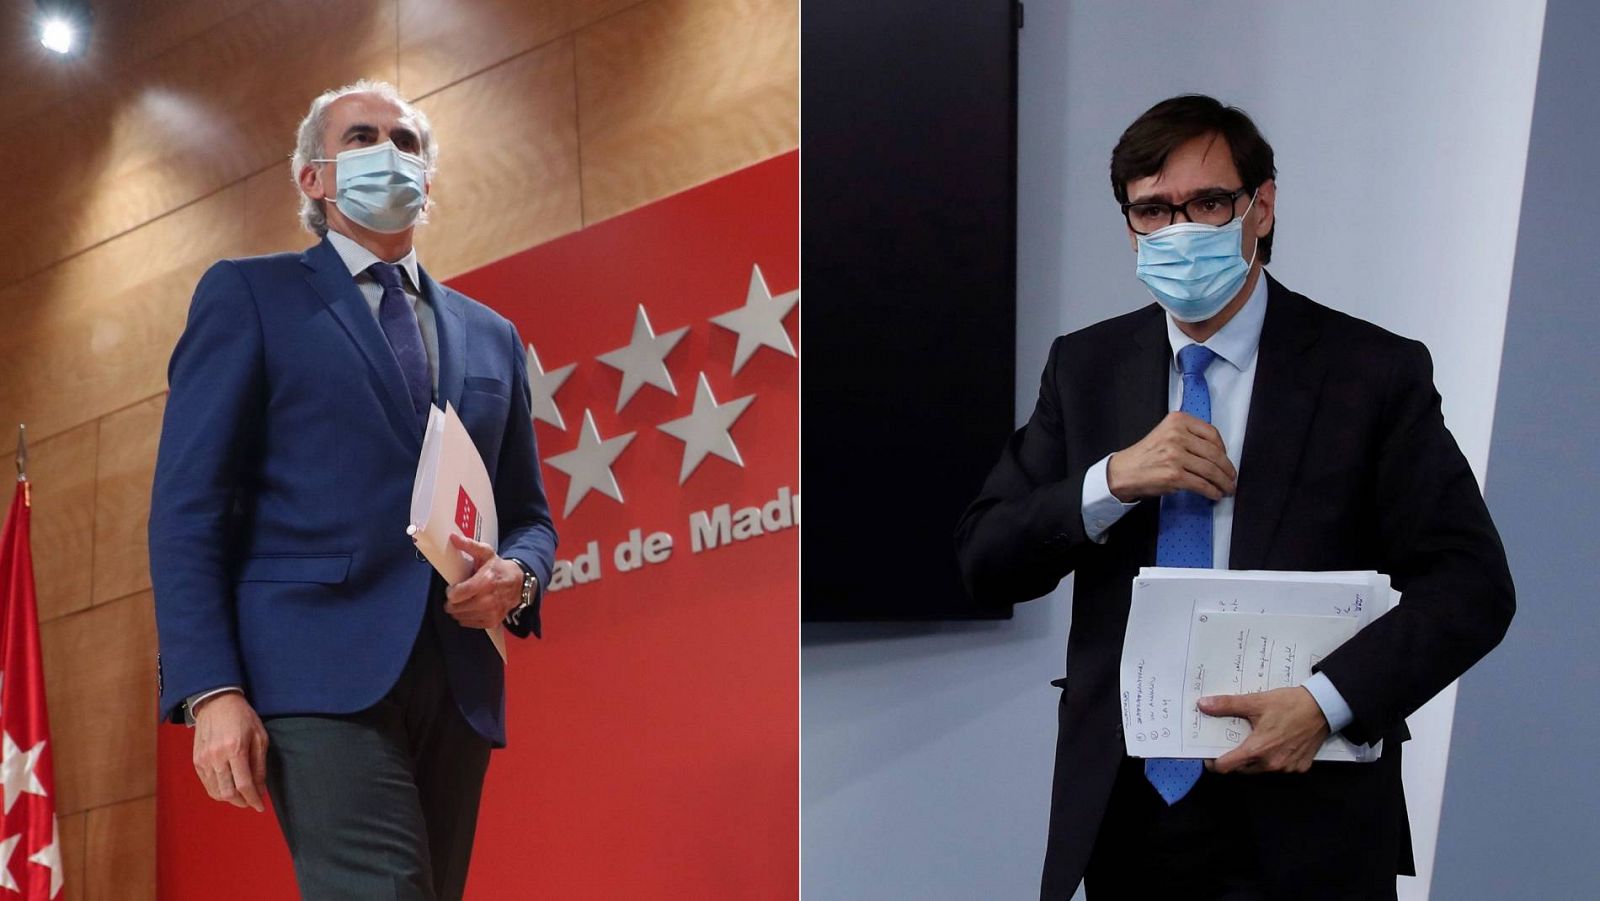 El consejero de Sanidad de la Comunidad de Madrid, Enrique Ruiz Escudero, frente al ministro de Sanidad, Salvador Illa